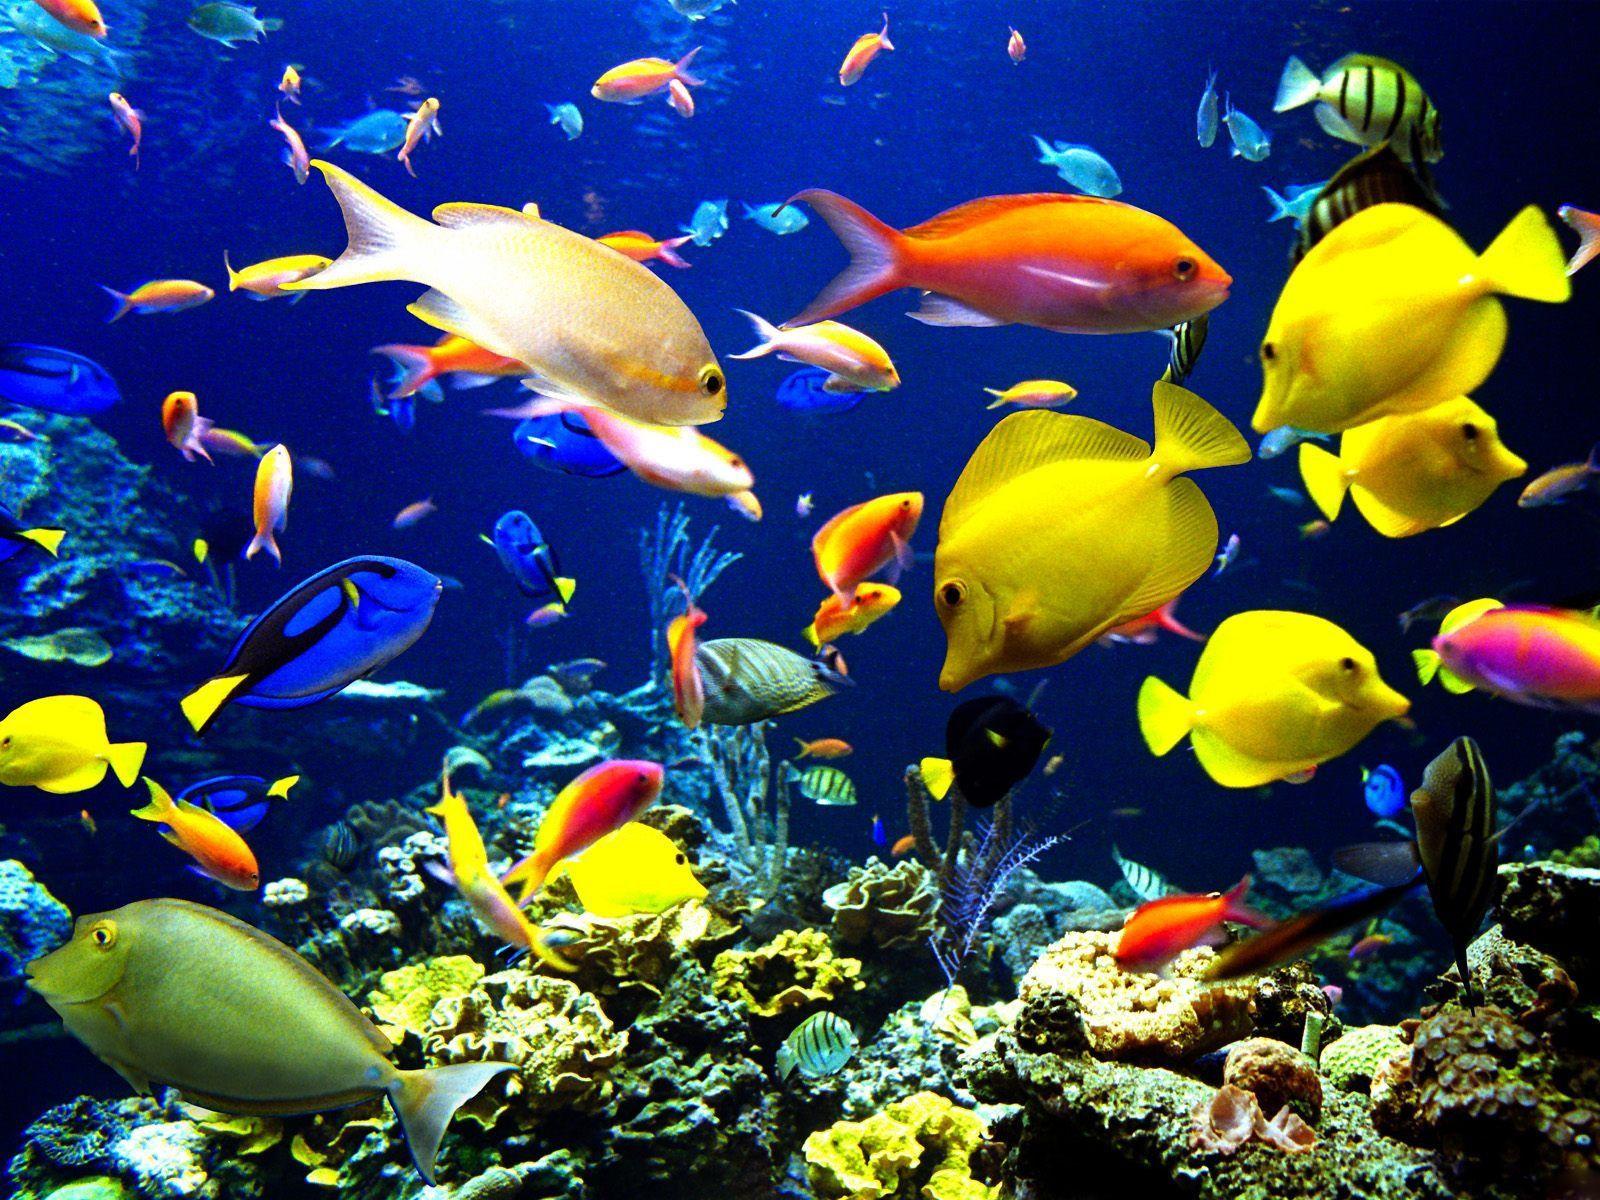 Best Wallpaper: Colorful Fish Wallpaper. Fish wallpaper, Colorful fish, Fish under